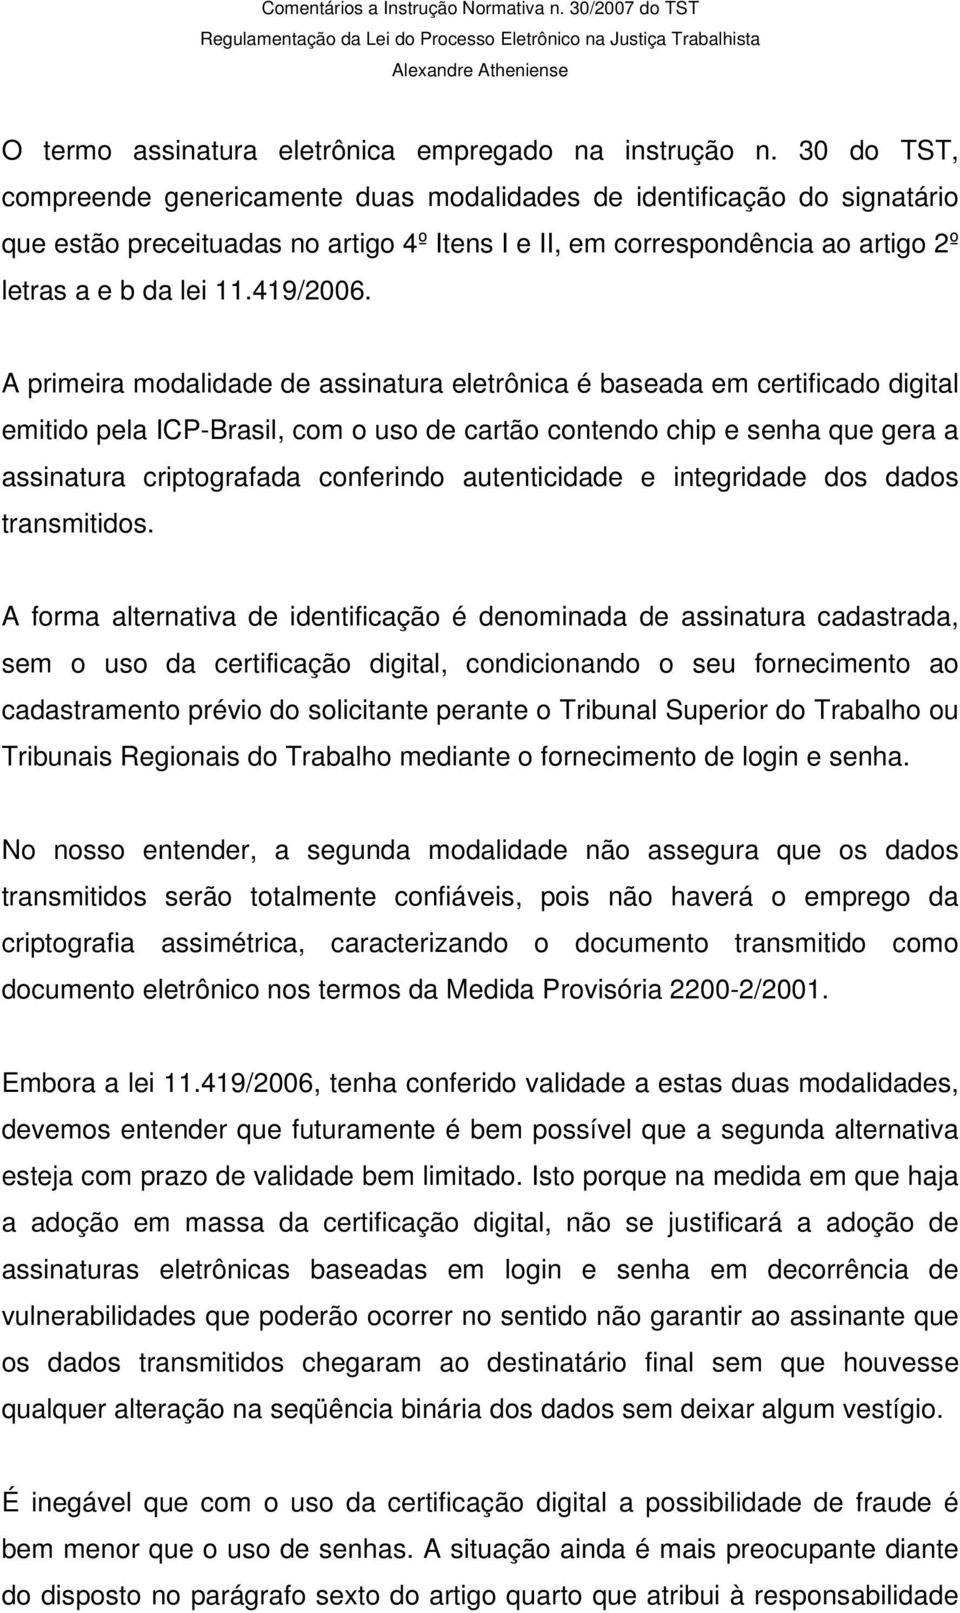 A primeira modalidade de assinatura eletrônica é baseada em certificado digital emitido pela ICP-Brasil, com o uso de cartão contendo chip e senha que gera a assinatura criptografada conferindo